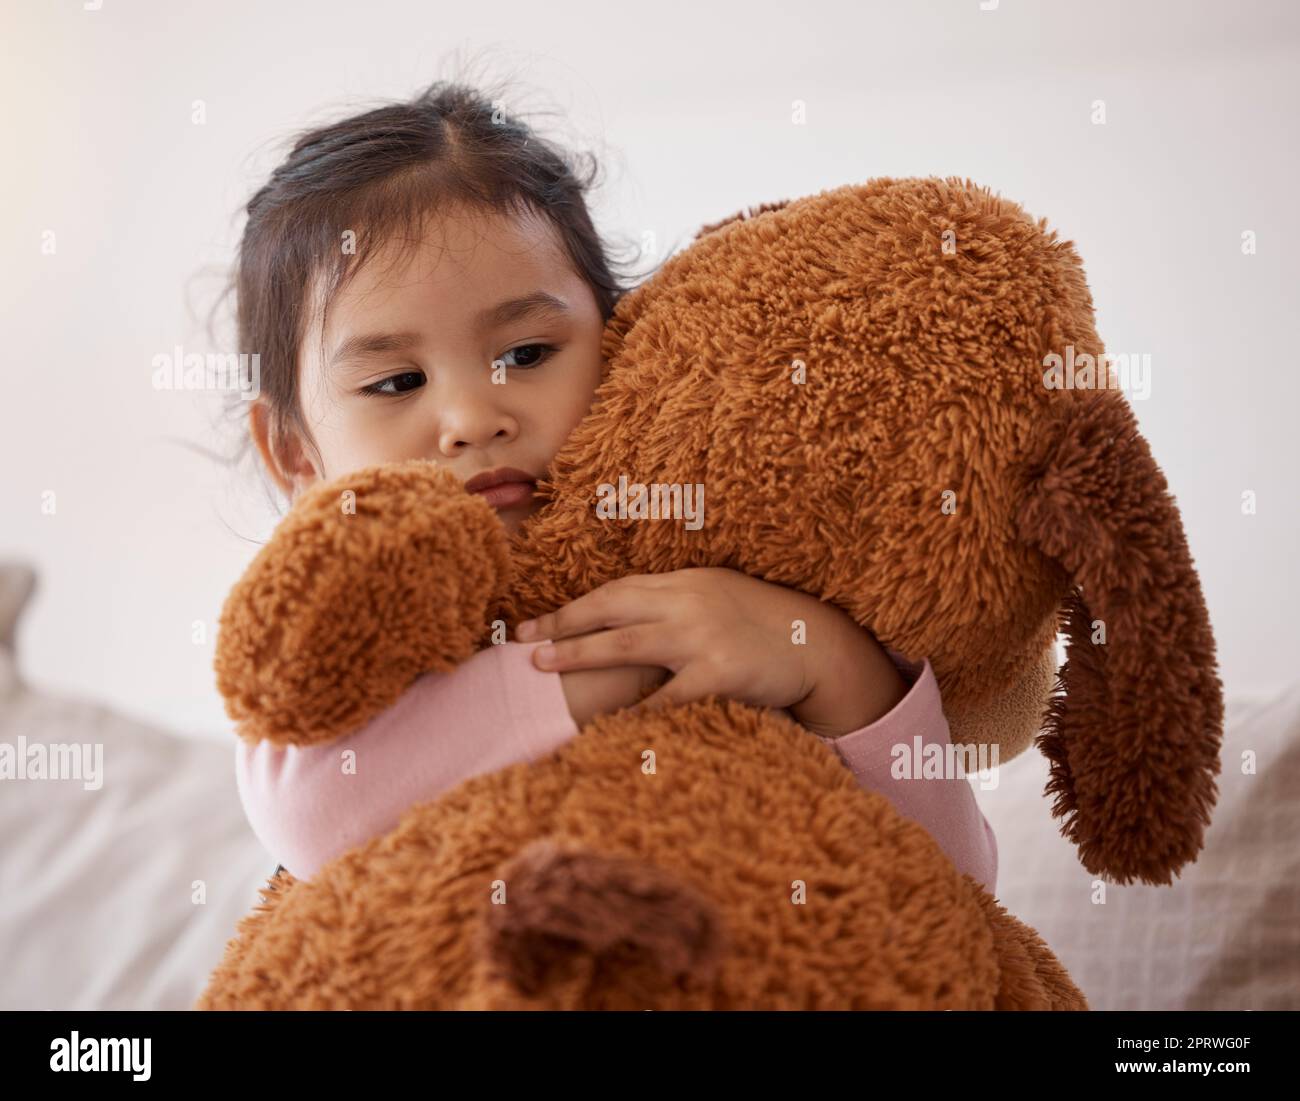 Kinder, Angst und Angst mit einem Mädchen, das ihren Teddybär hält, nach einem Albtraum in ihrem Schlafzimmer zu Hause. Kinder, Angst und Depression mit einem kleinen weiblichen Kind, das ein Stofftier in ihrem Haus umarmt Stockfoto